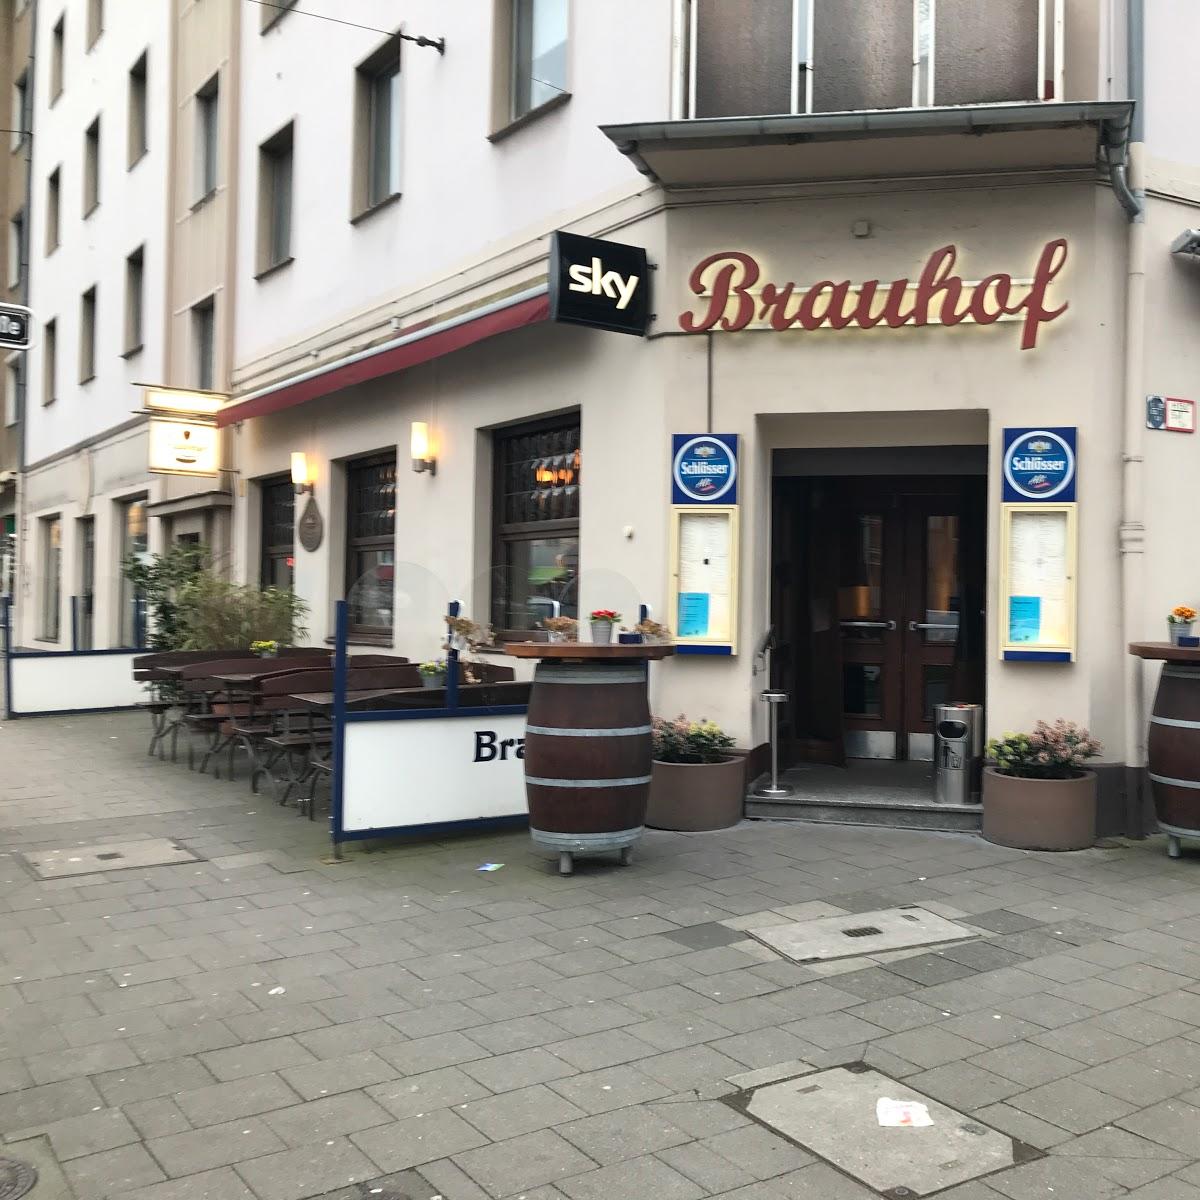 Restaurant "Brauhof" in Düsseldorf